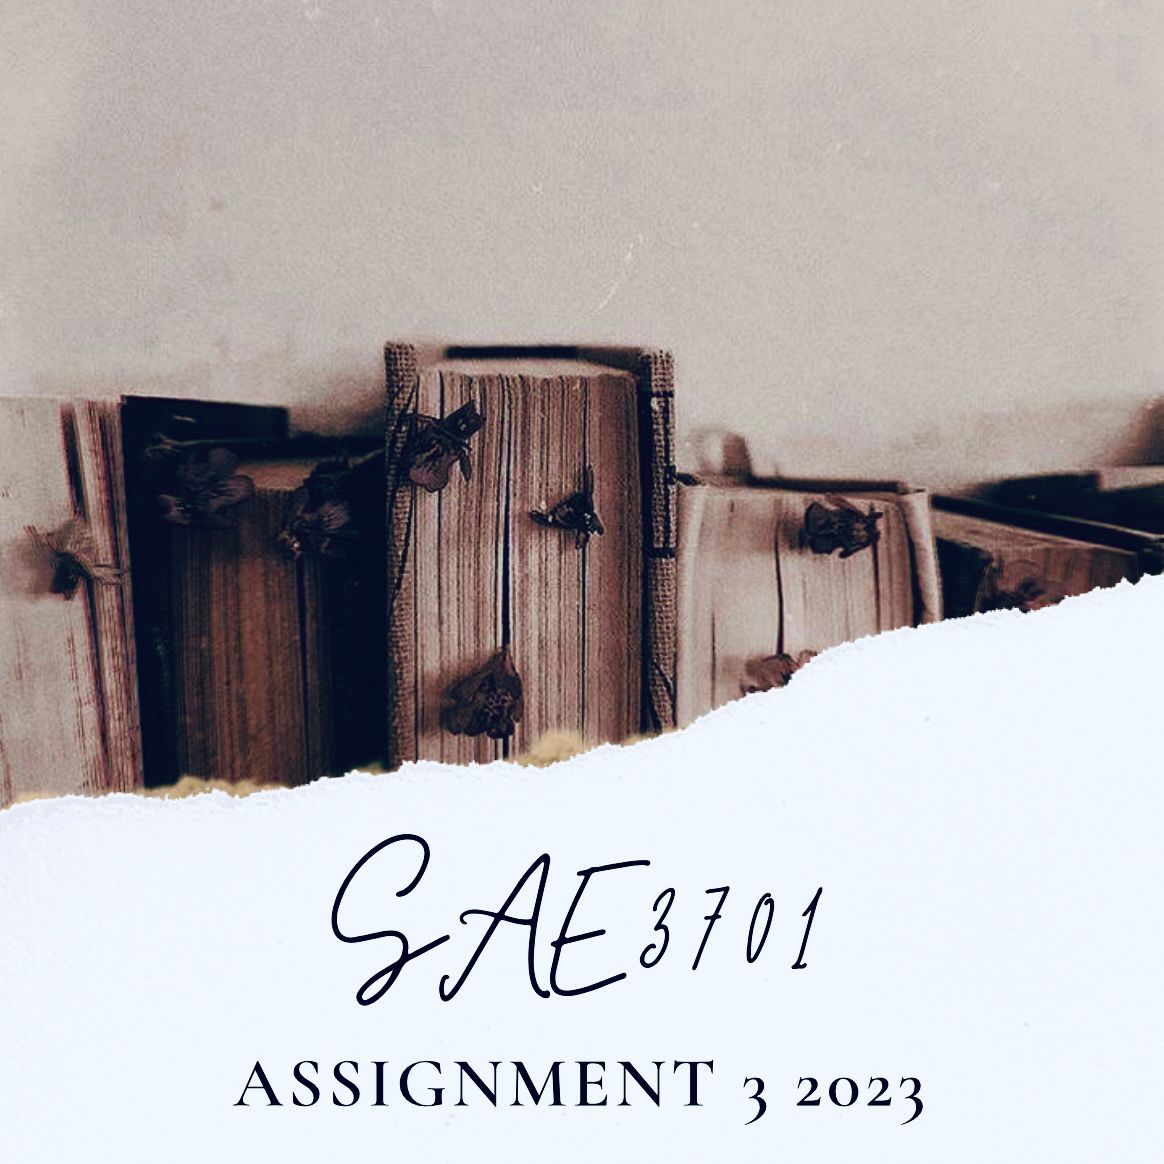 sae3701 assignment 3 memorandum